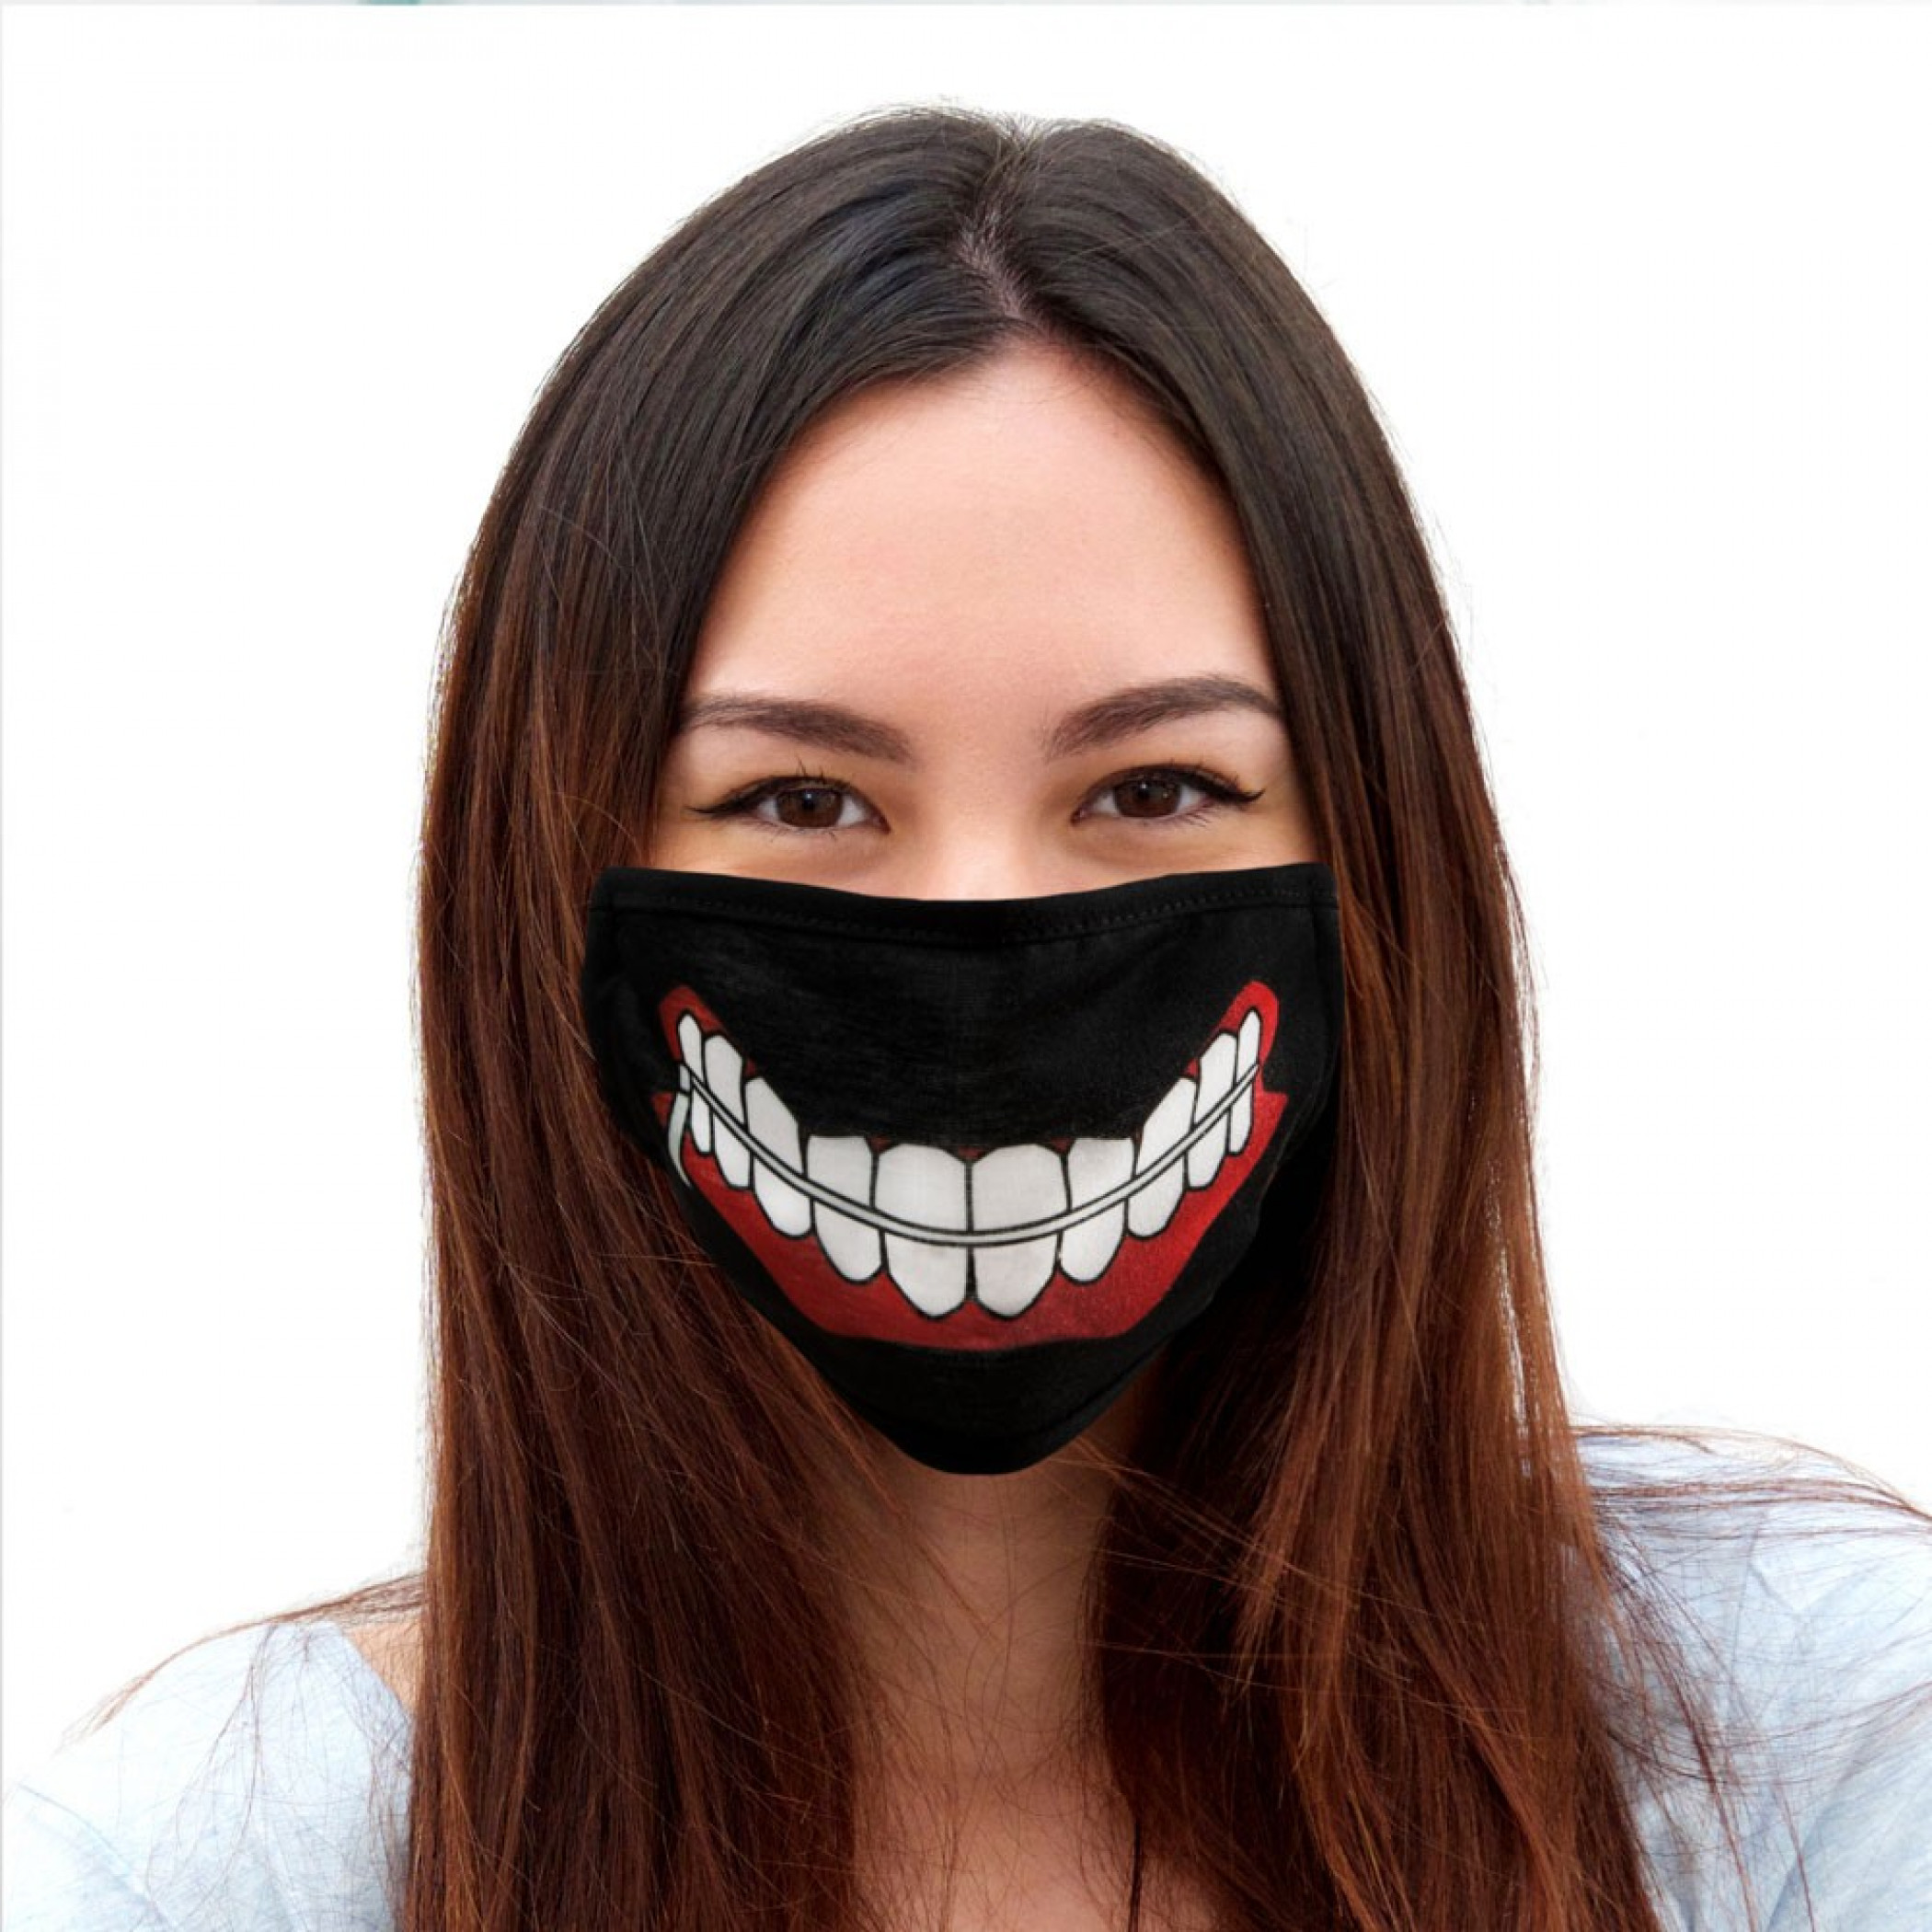 Tokyo Ghoul Kaneki Ken Mask Adjustable Face Cover